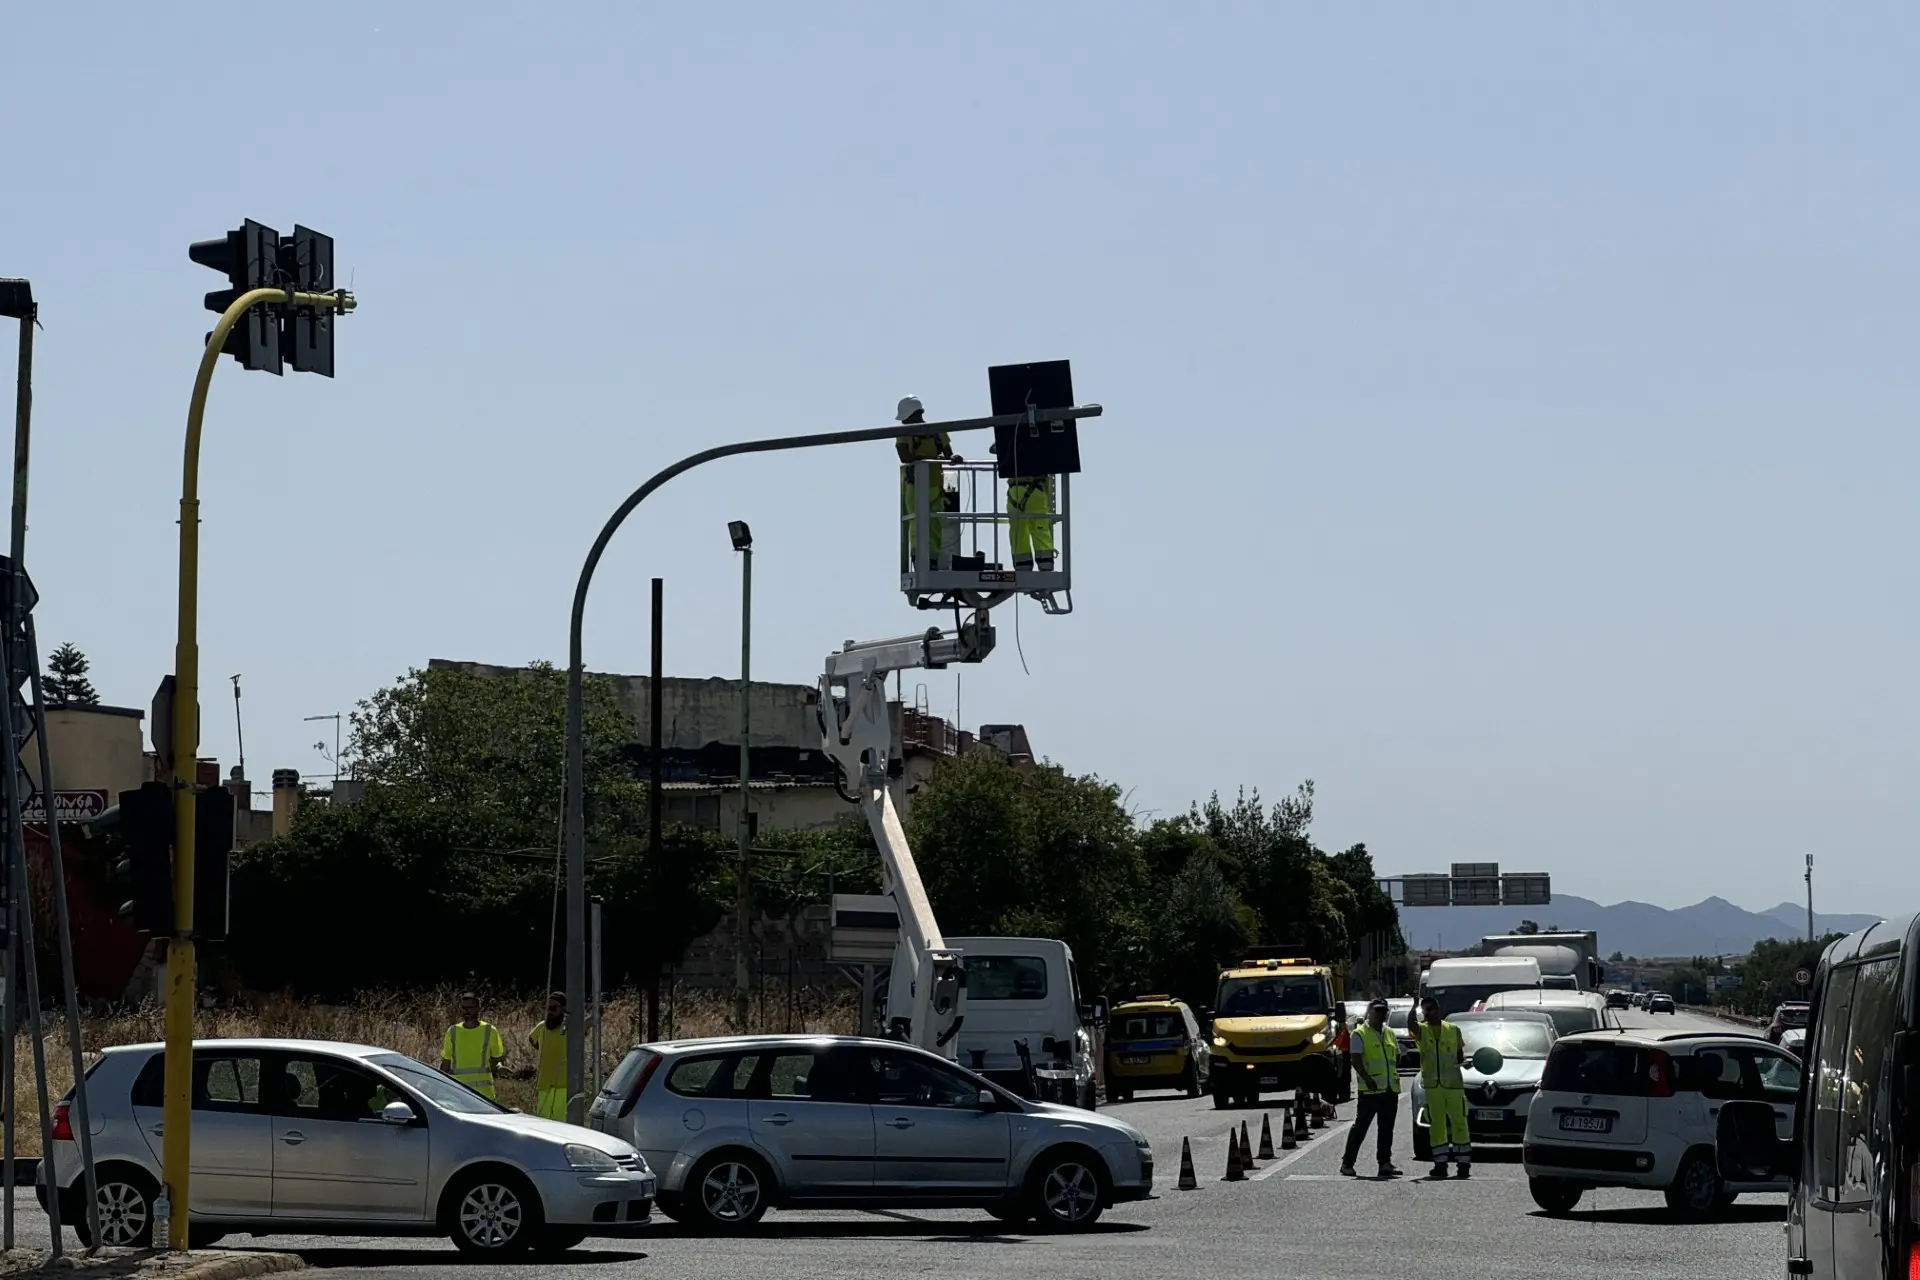 Il semaforo danneggiato (foto Andrea Serreli)